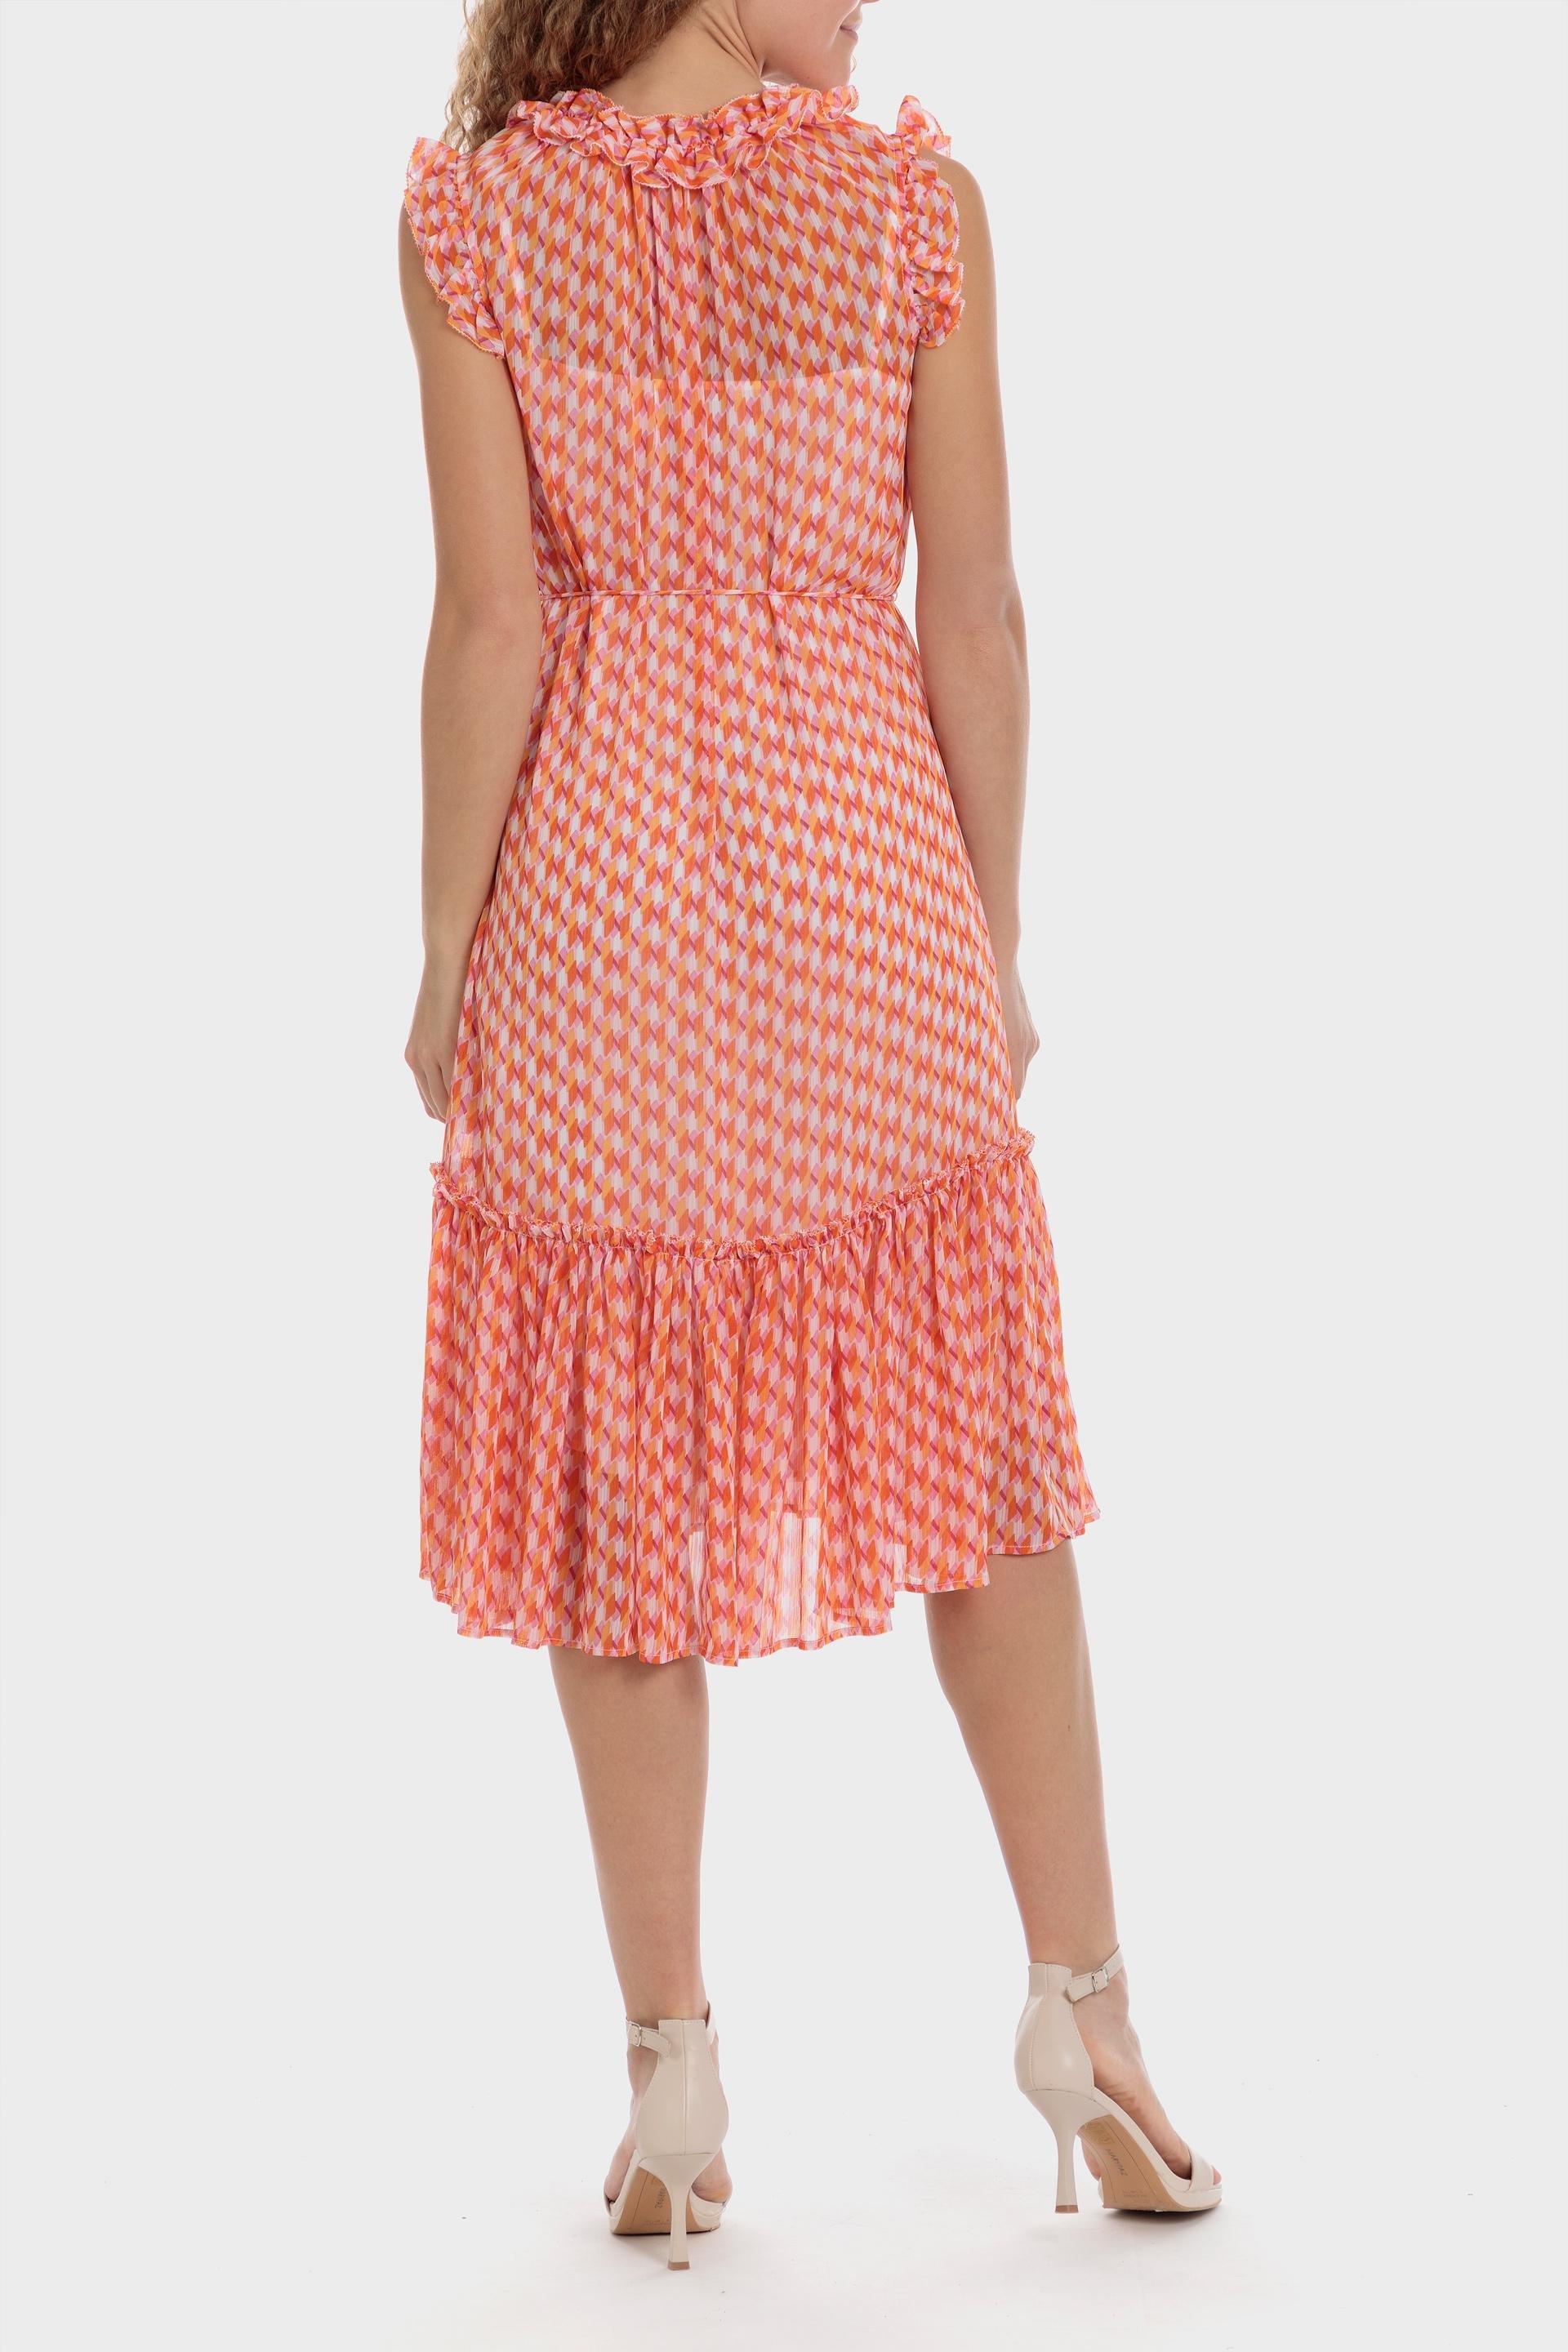 Punt Roma - Orange Printed Dress